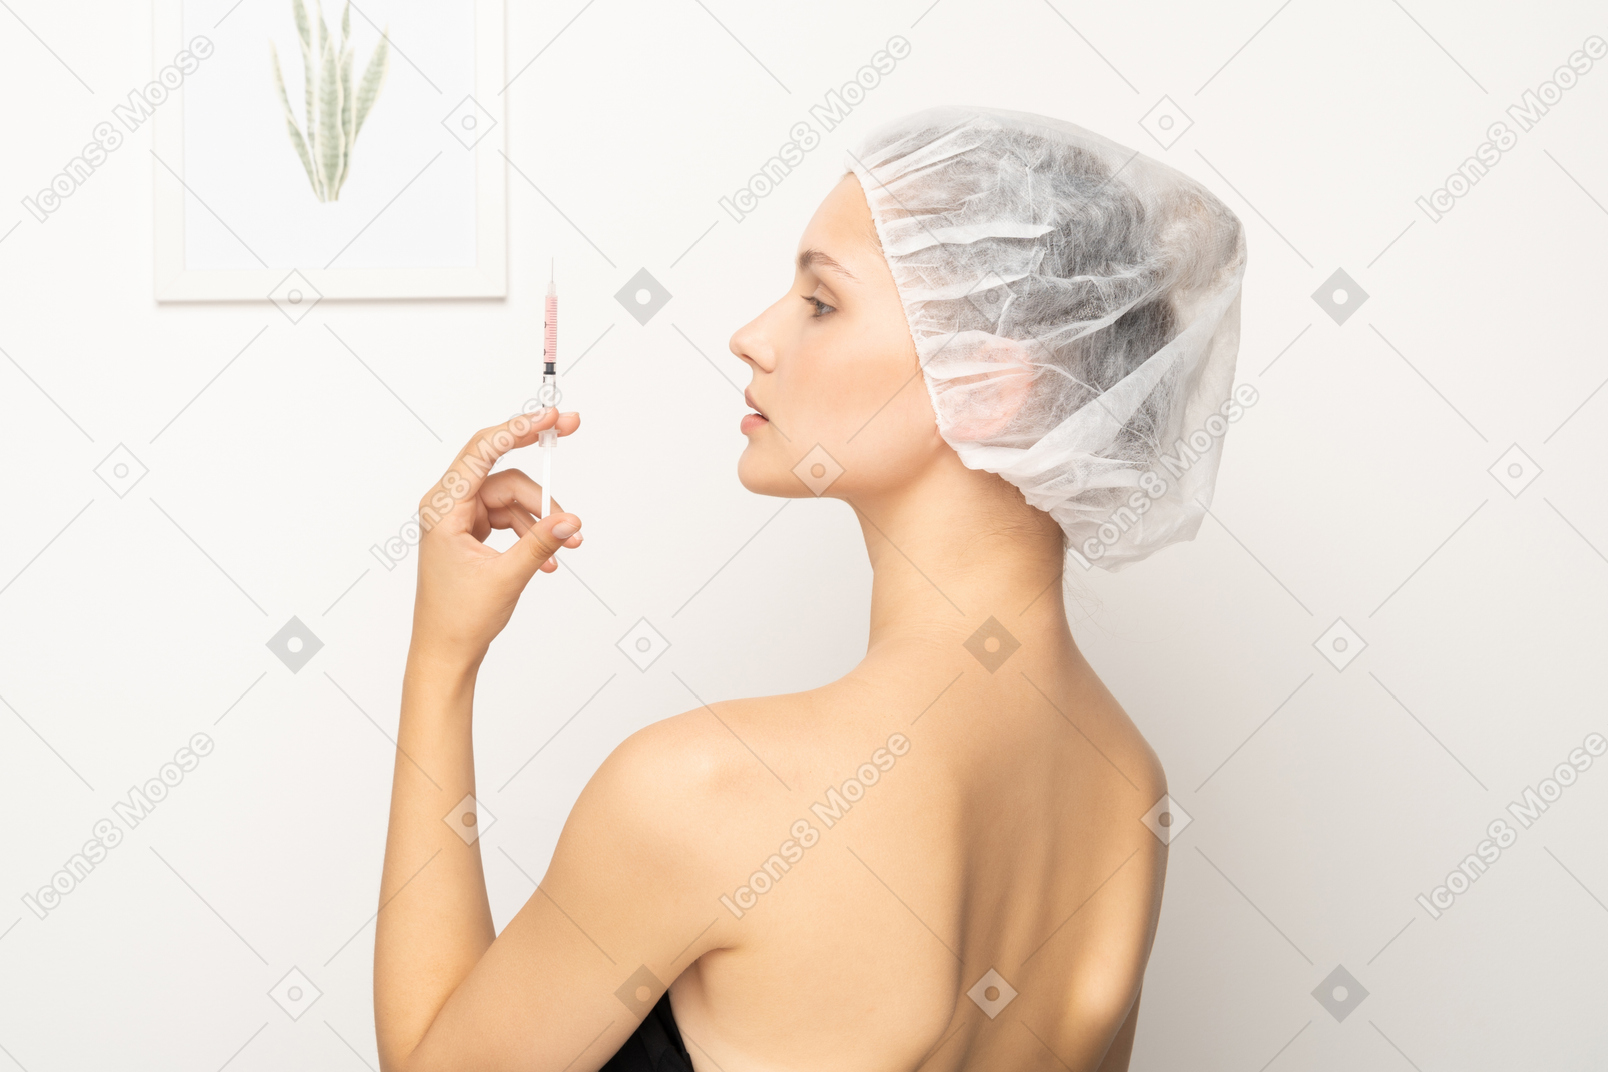 Vista lateral de uma mulher segurando uma seringa